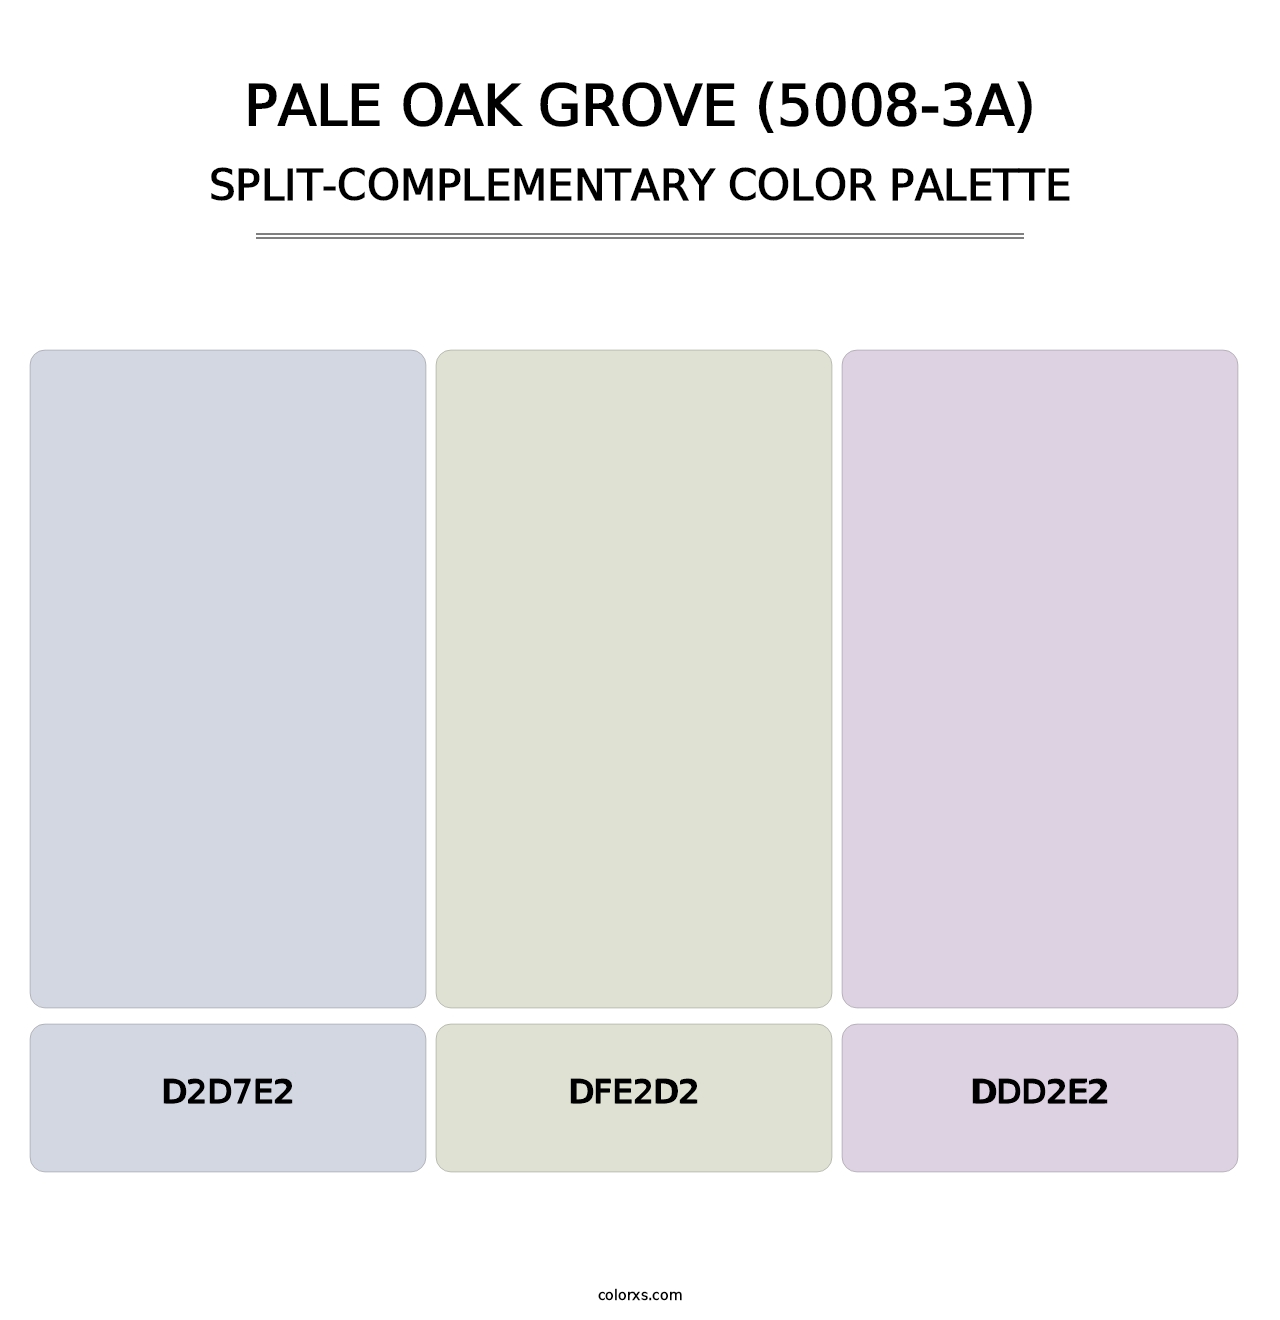 Pale Oak Grove (5008-3A) - Split-Complementary Color Palette